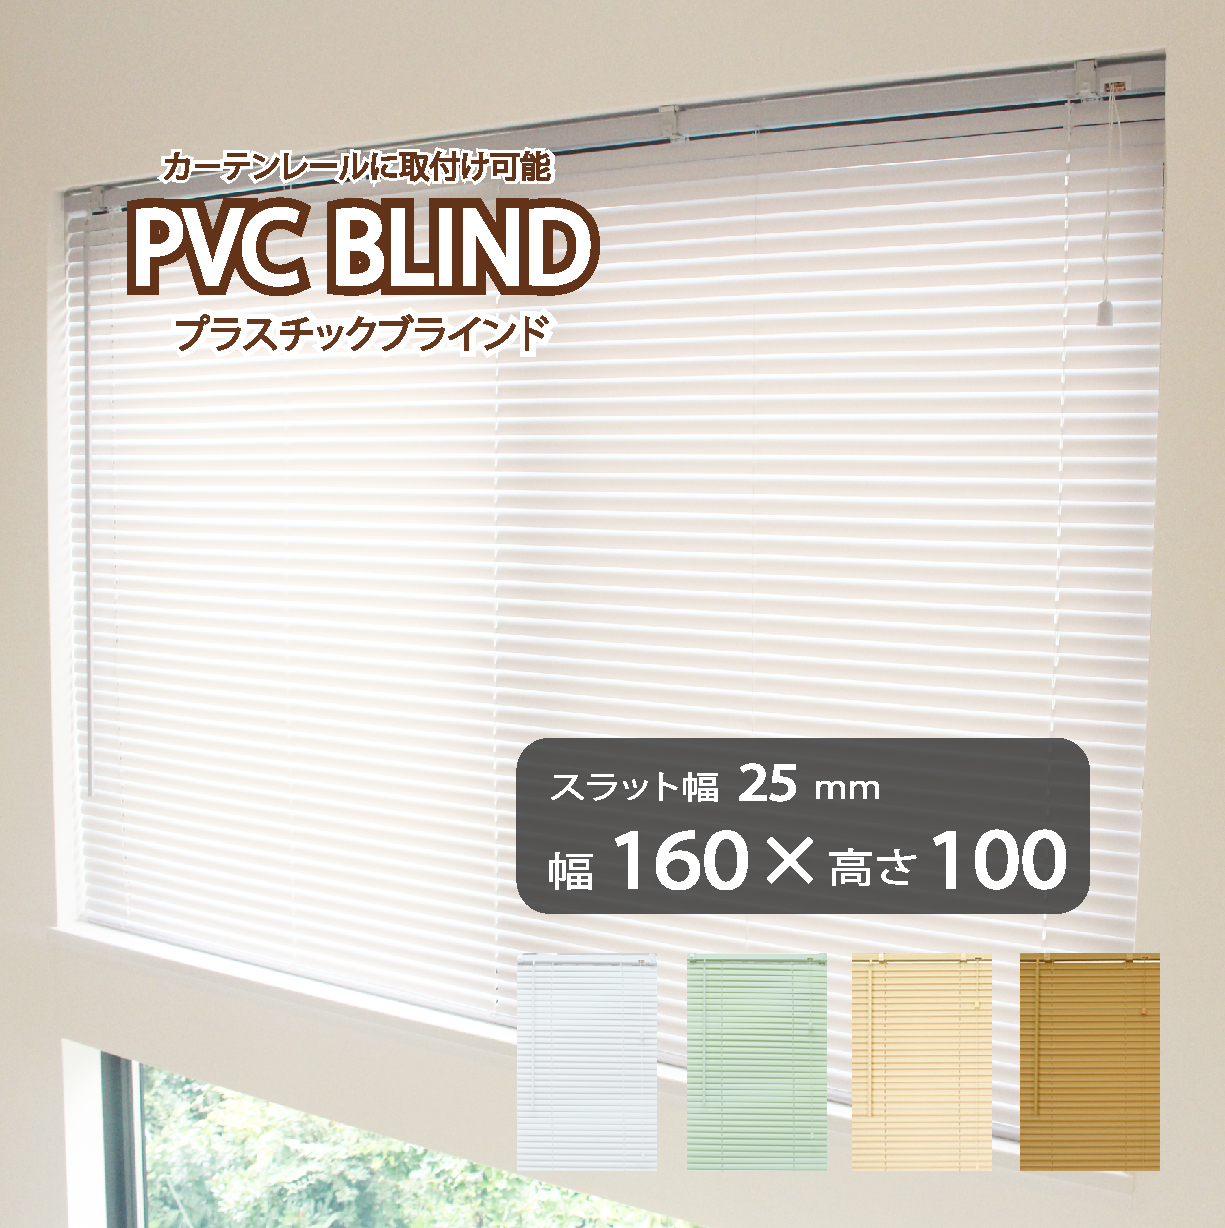 ブラインド カーテン カーテンレール 取付可能 PVC プラスチック 既成サイズ スラット幅25mm (幅160cm×高さ100cm) かんたん取付  1年間の製品保証